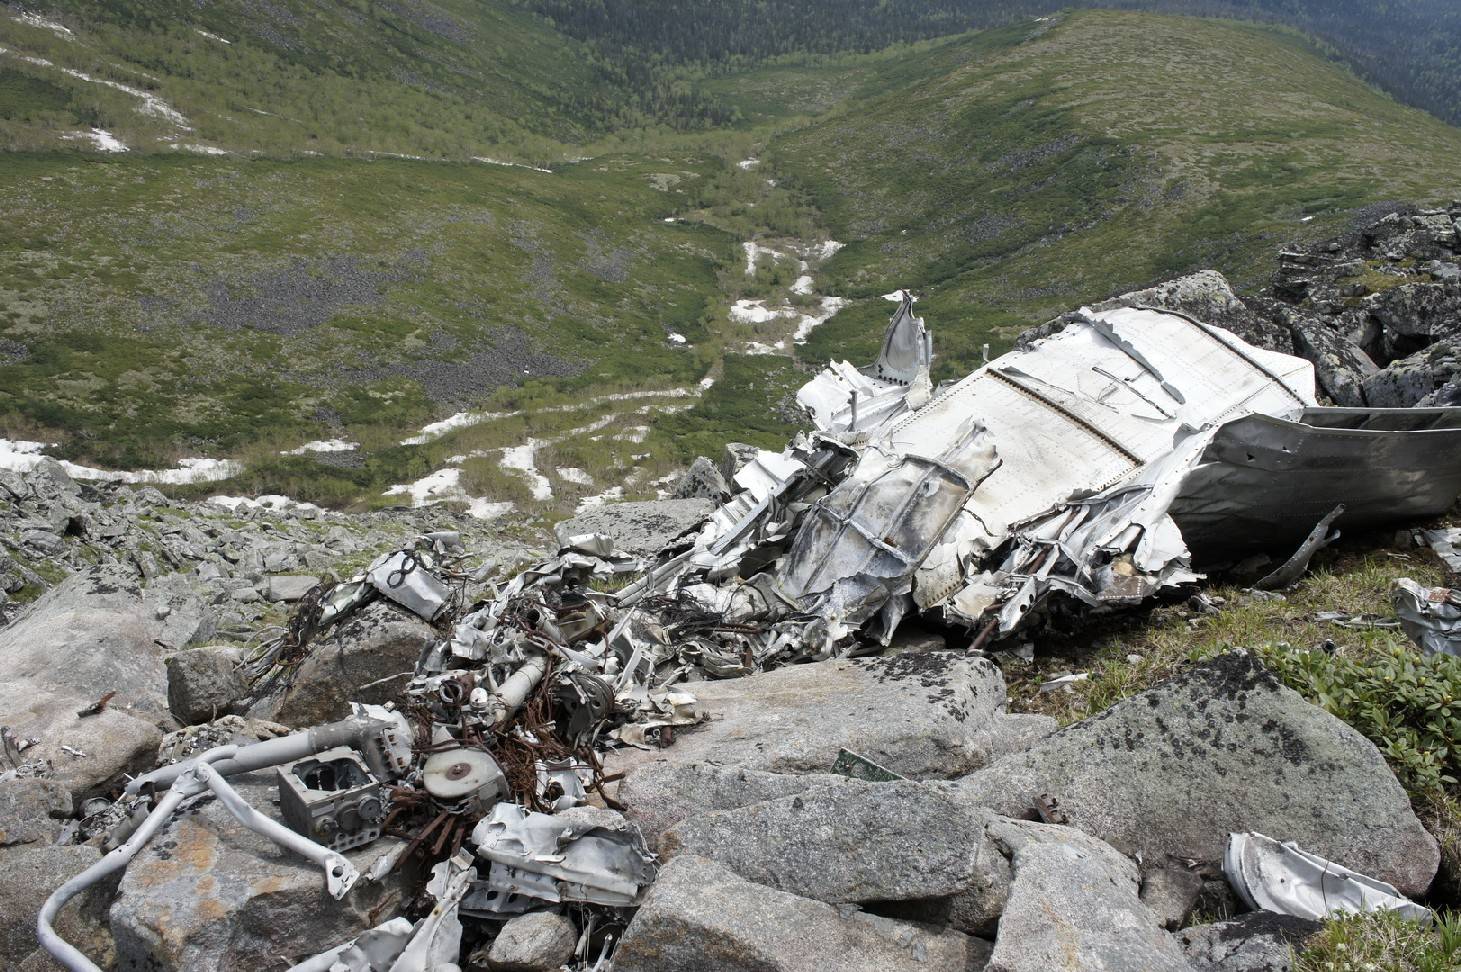 Самолет ту-154 упал под иркутском > авиакатастрофы > momento mori > культура > информационный портал «грот»